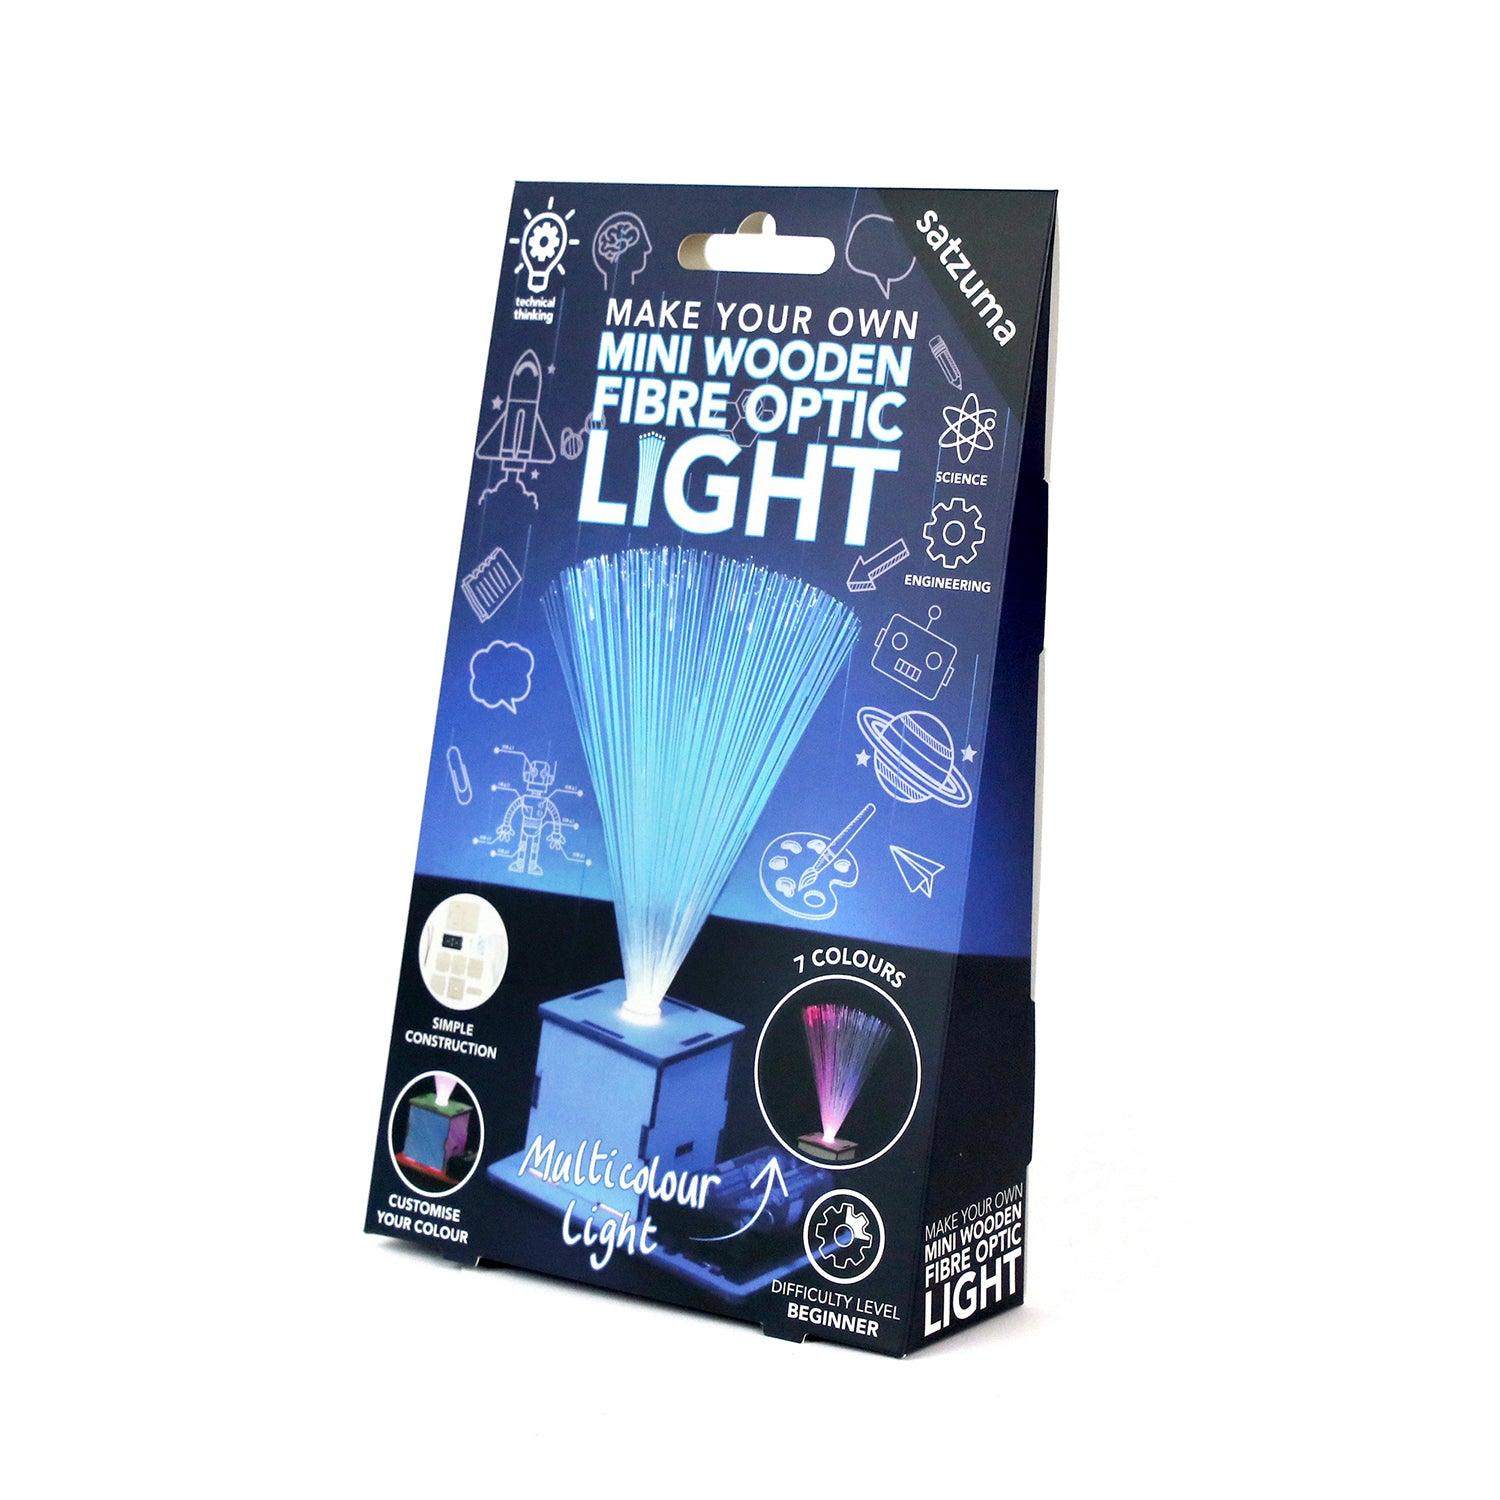 Make Your Own Fibre-Optic Light Kit - Kits - Science Museum Shop